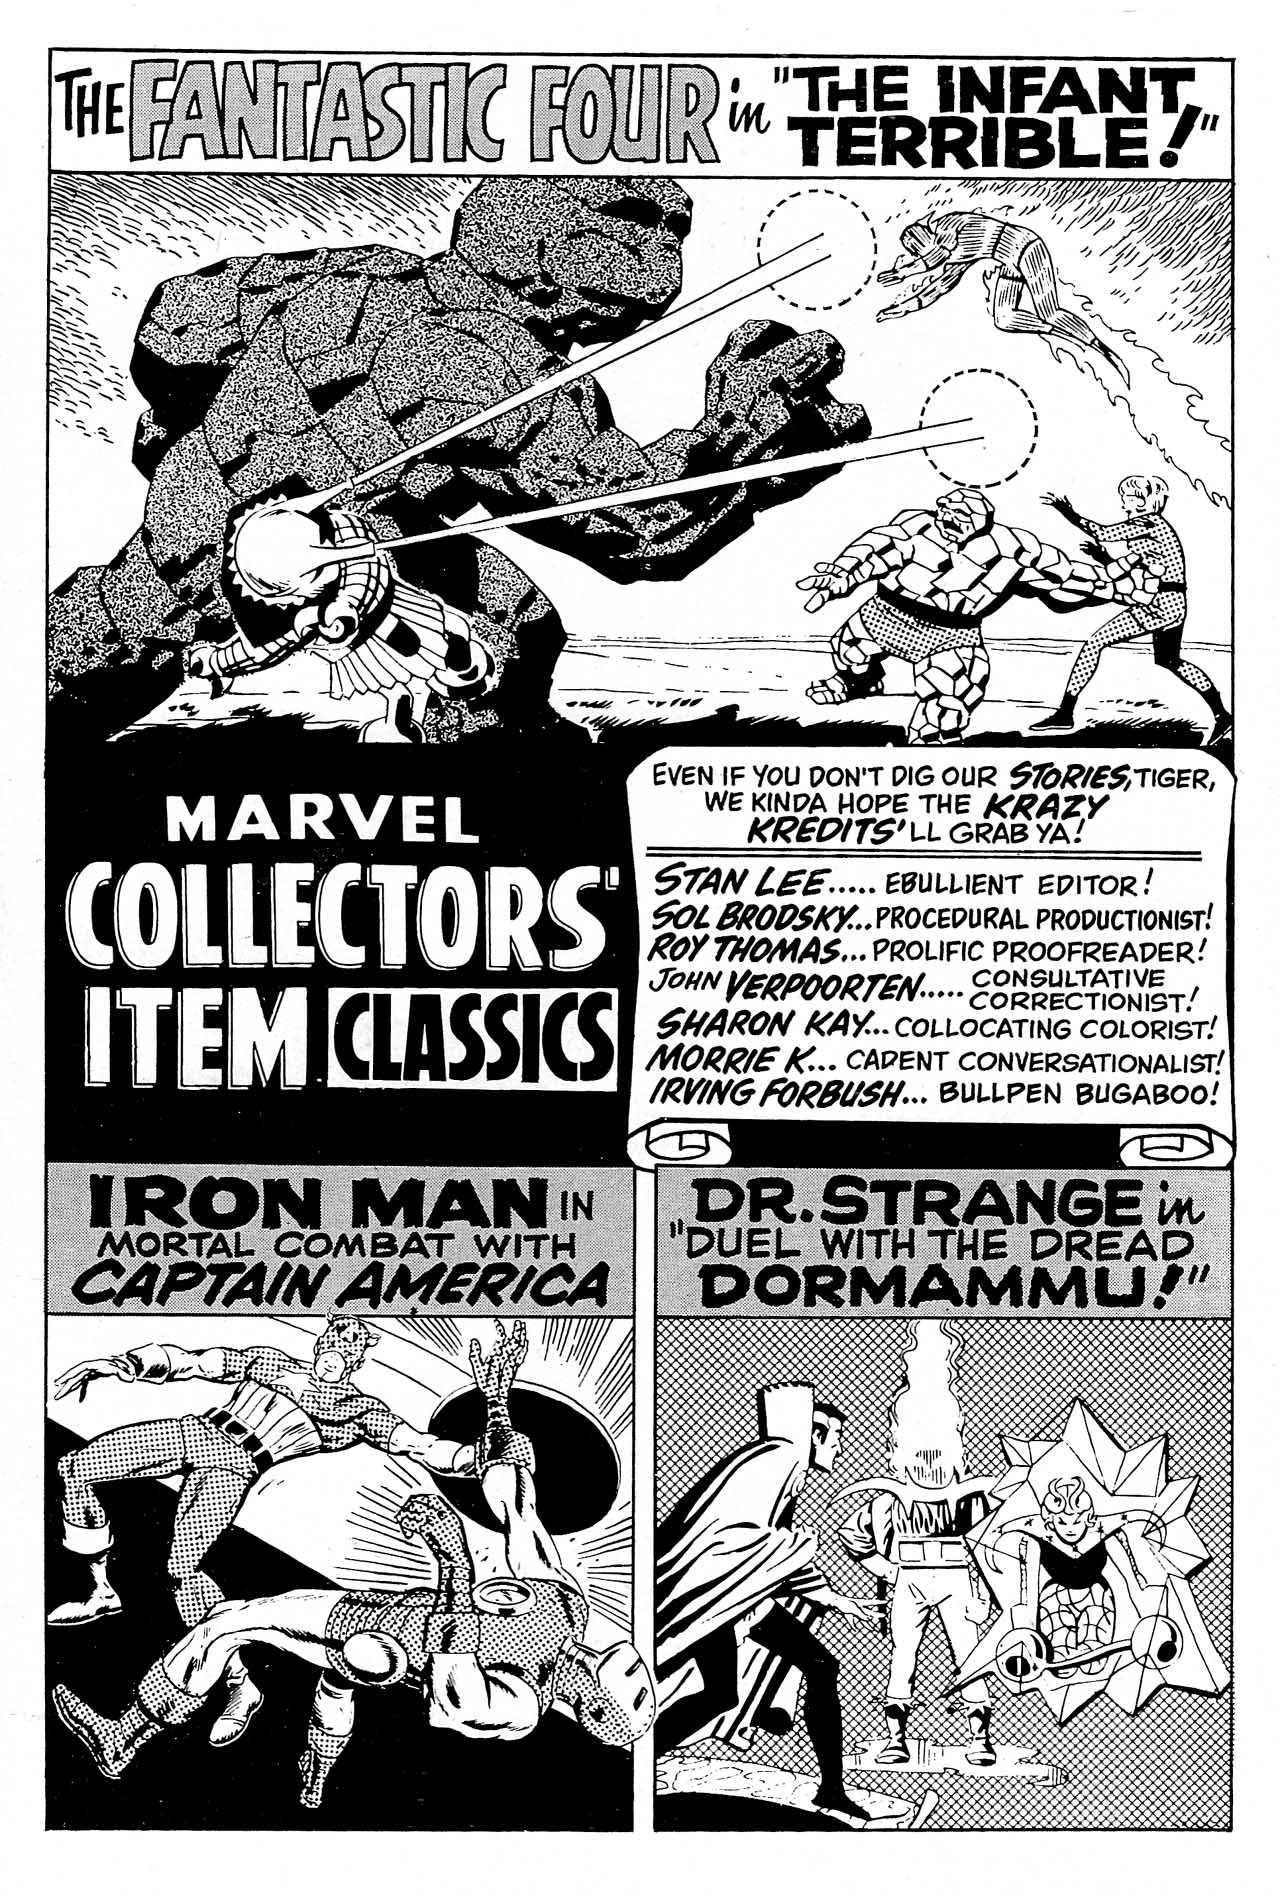 Read online Marvel Collectors' Item Classics comic -  Issue #18 - 2